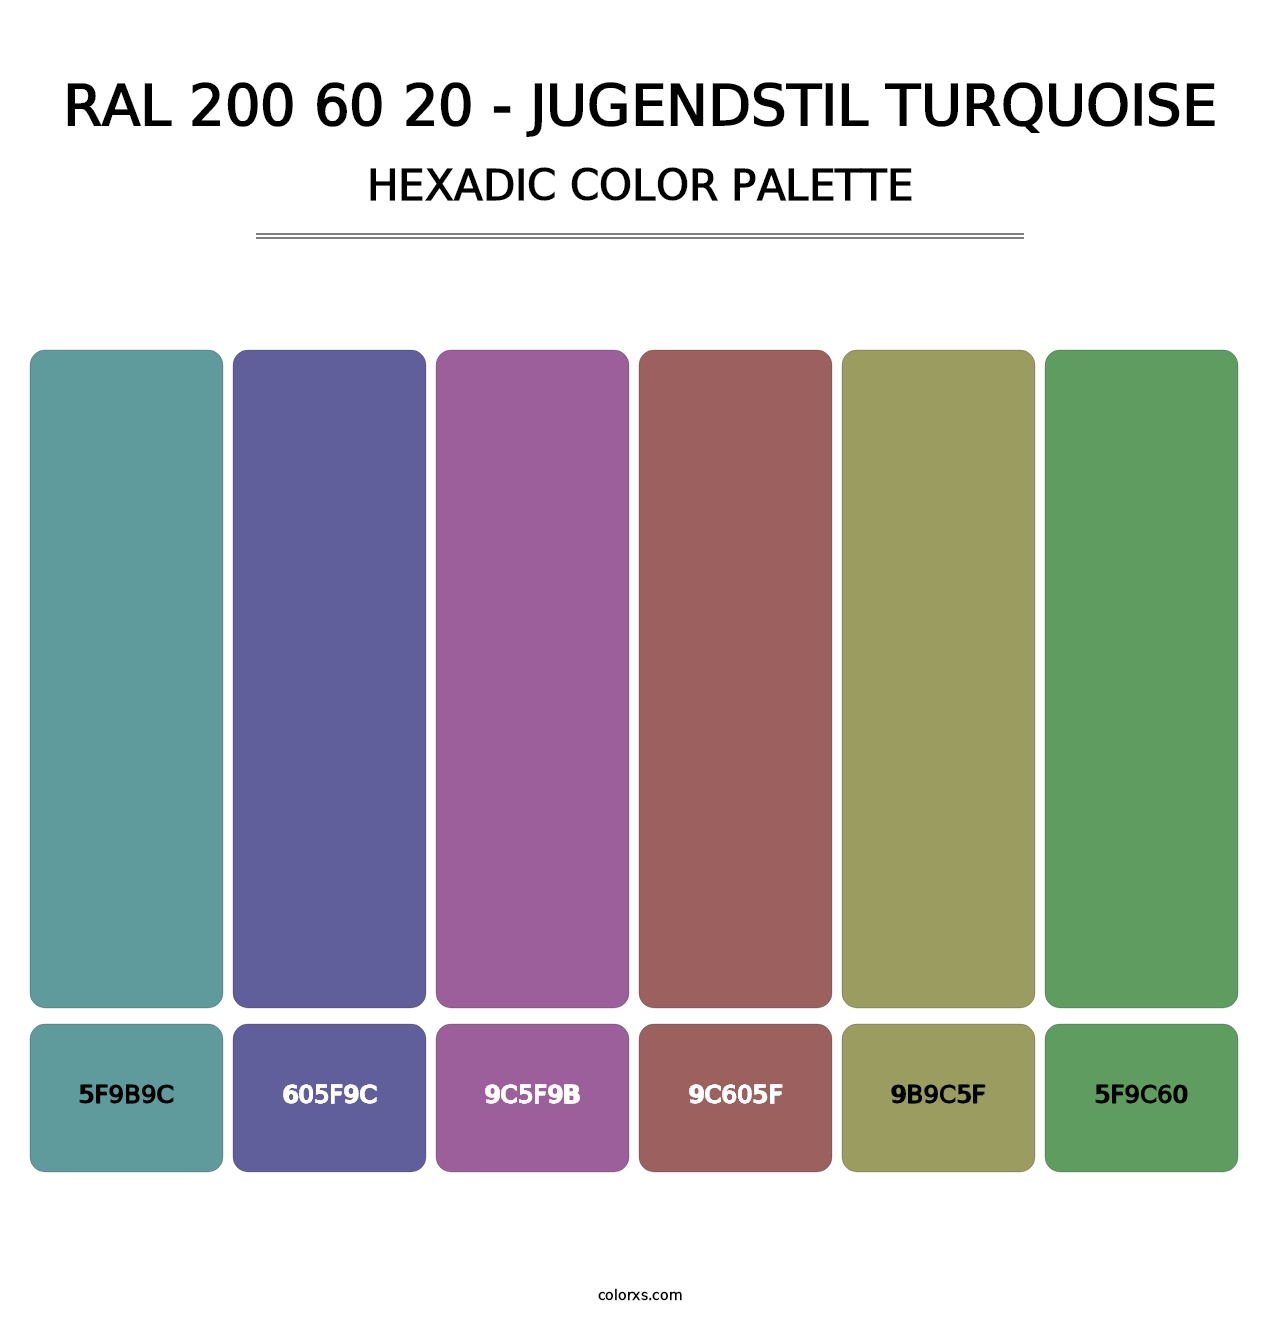 RAL 200 60 20 - Jugendstil Turquoise - Hexadic Color Palette